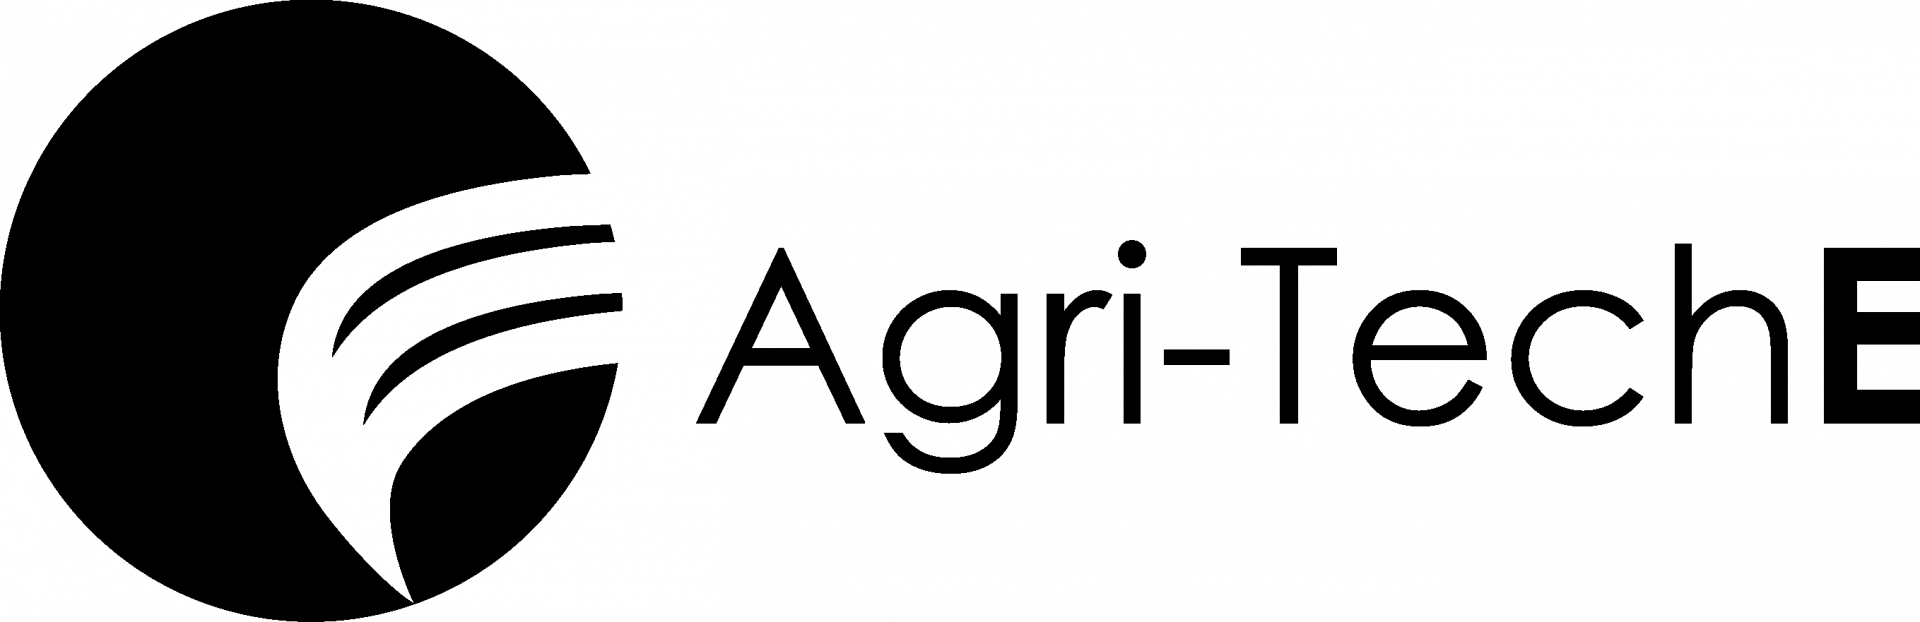 Agri-Tech E logo